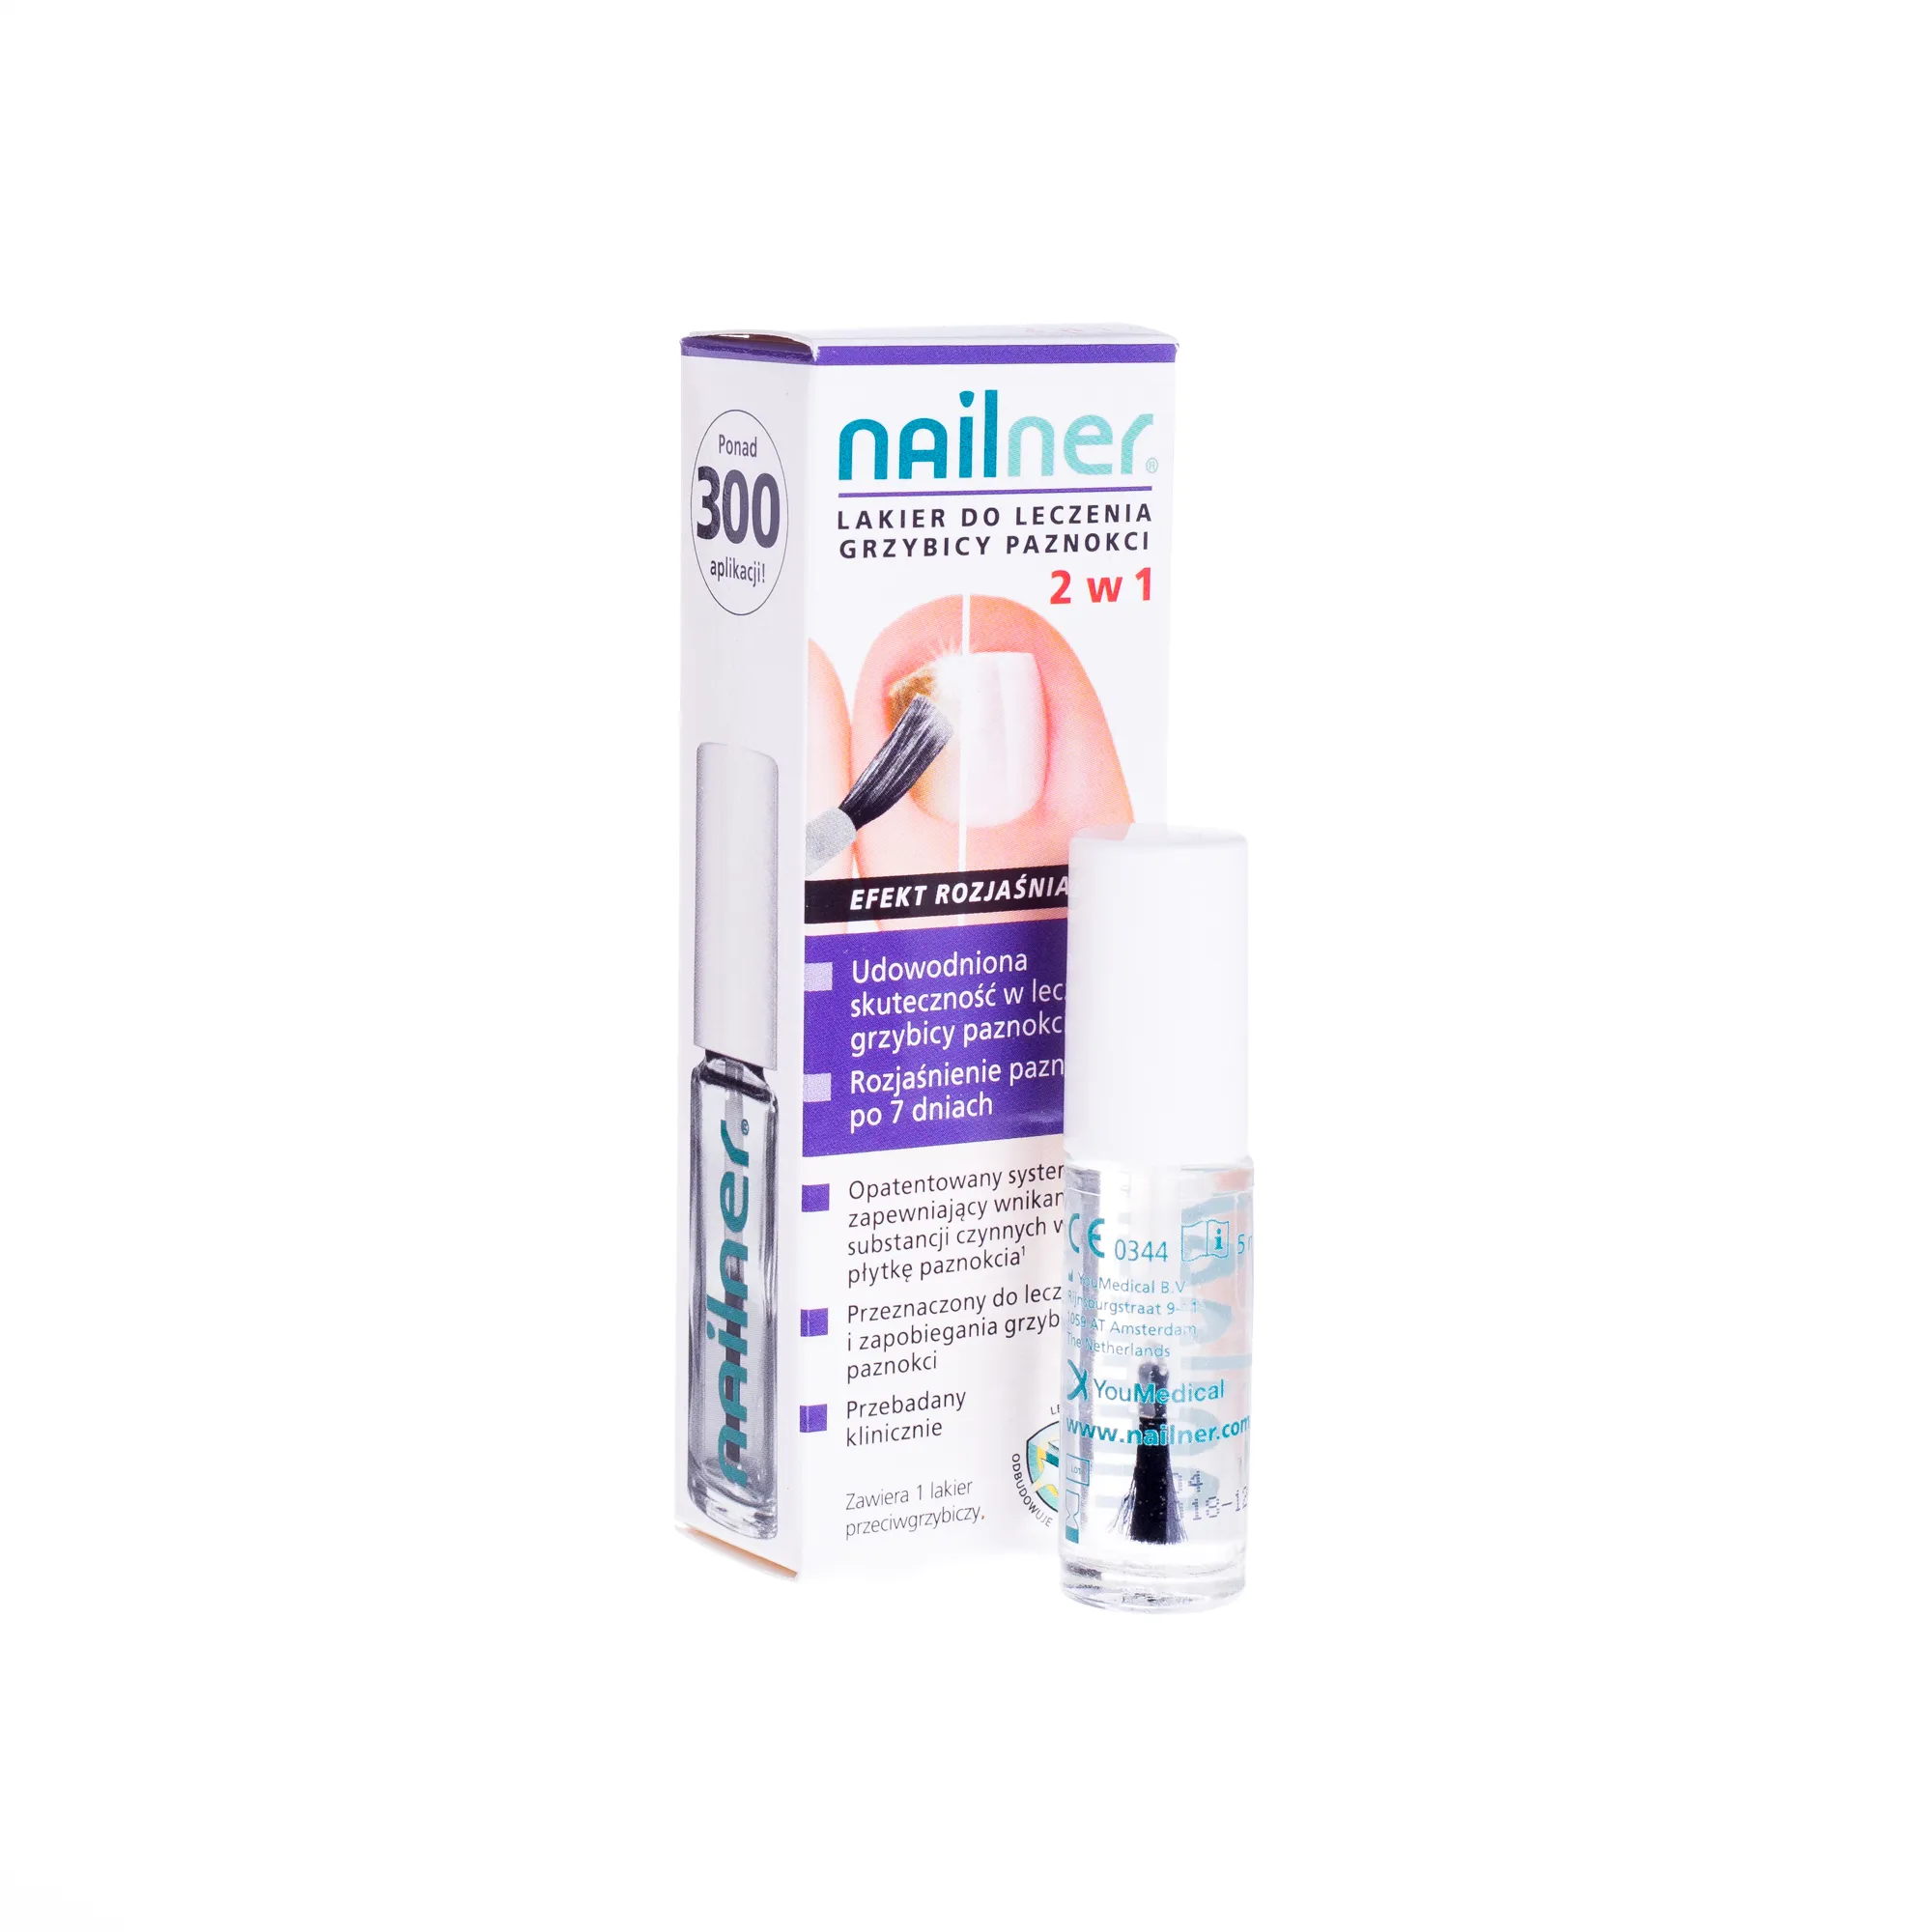 Nailner, lakier do leczenia grzybicy paznokci 2 w 1, 5 ml